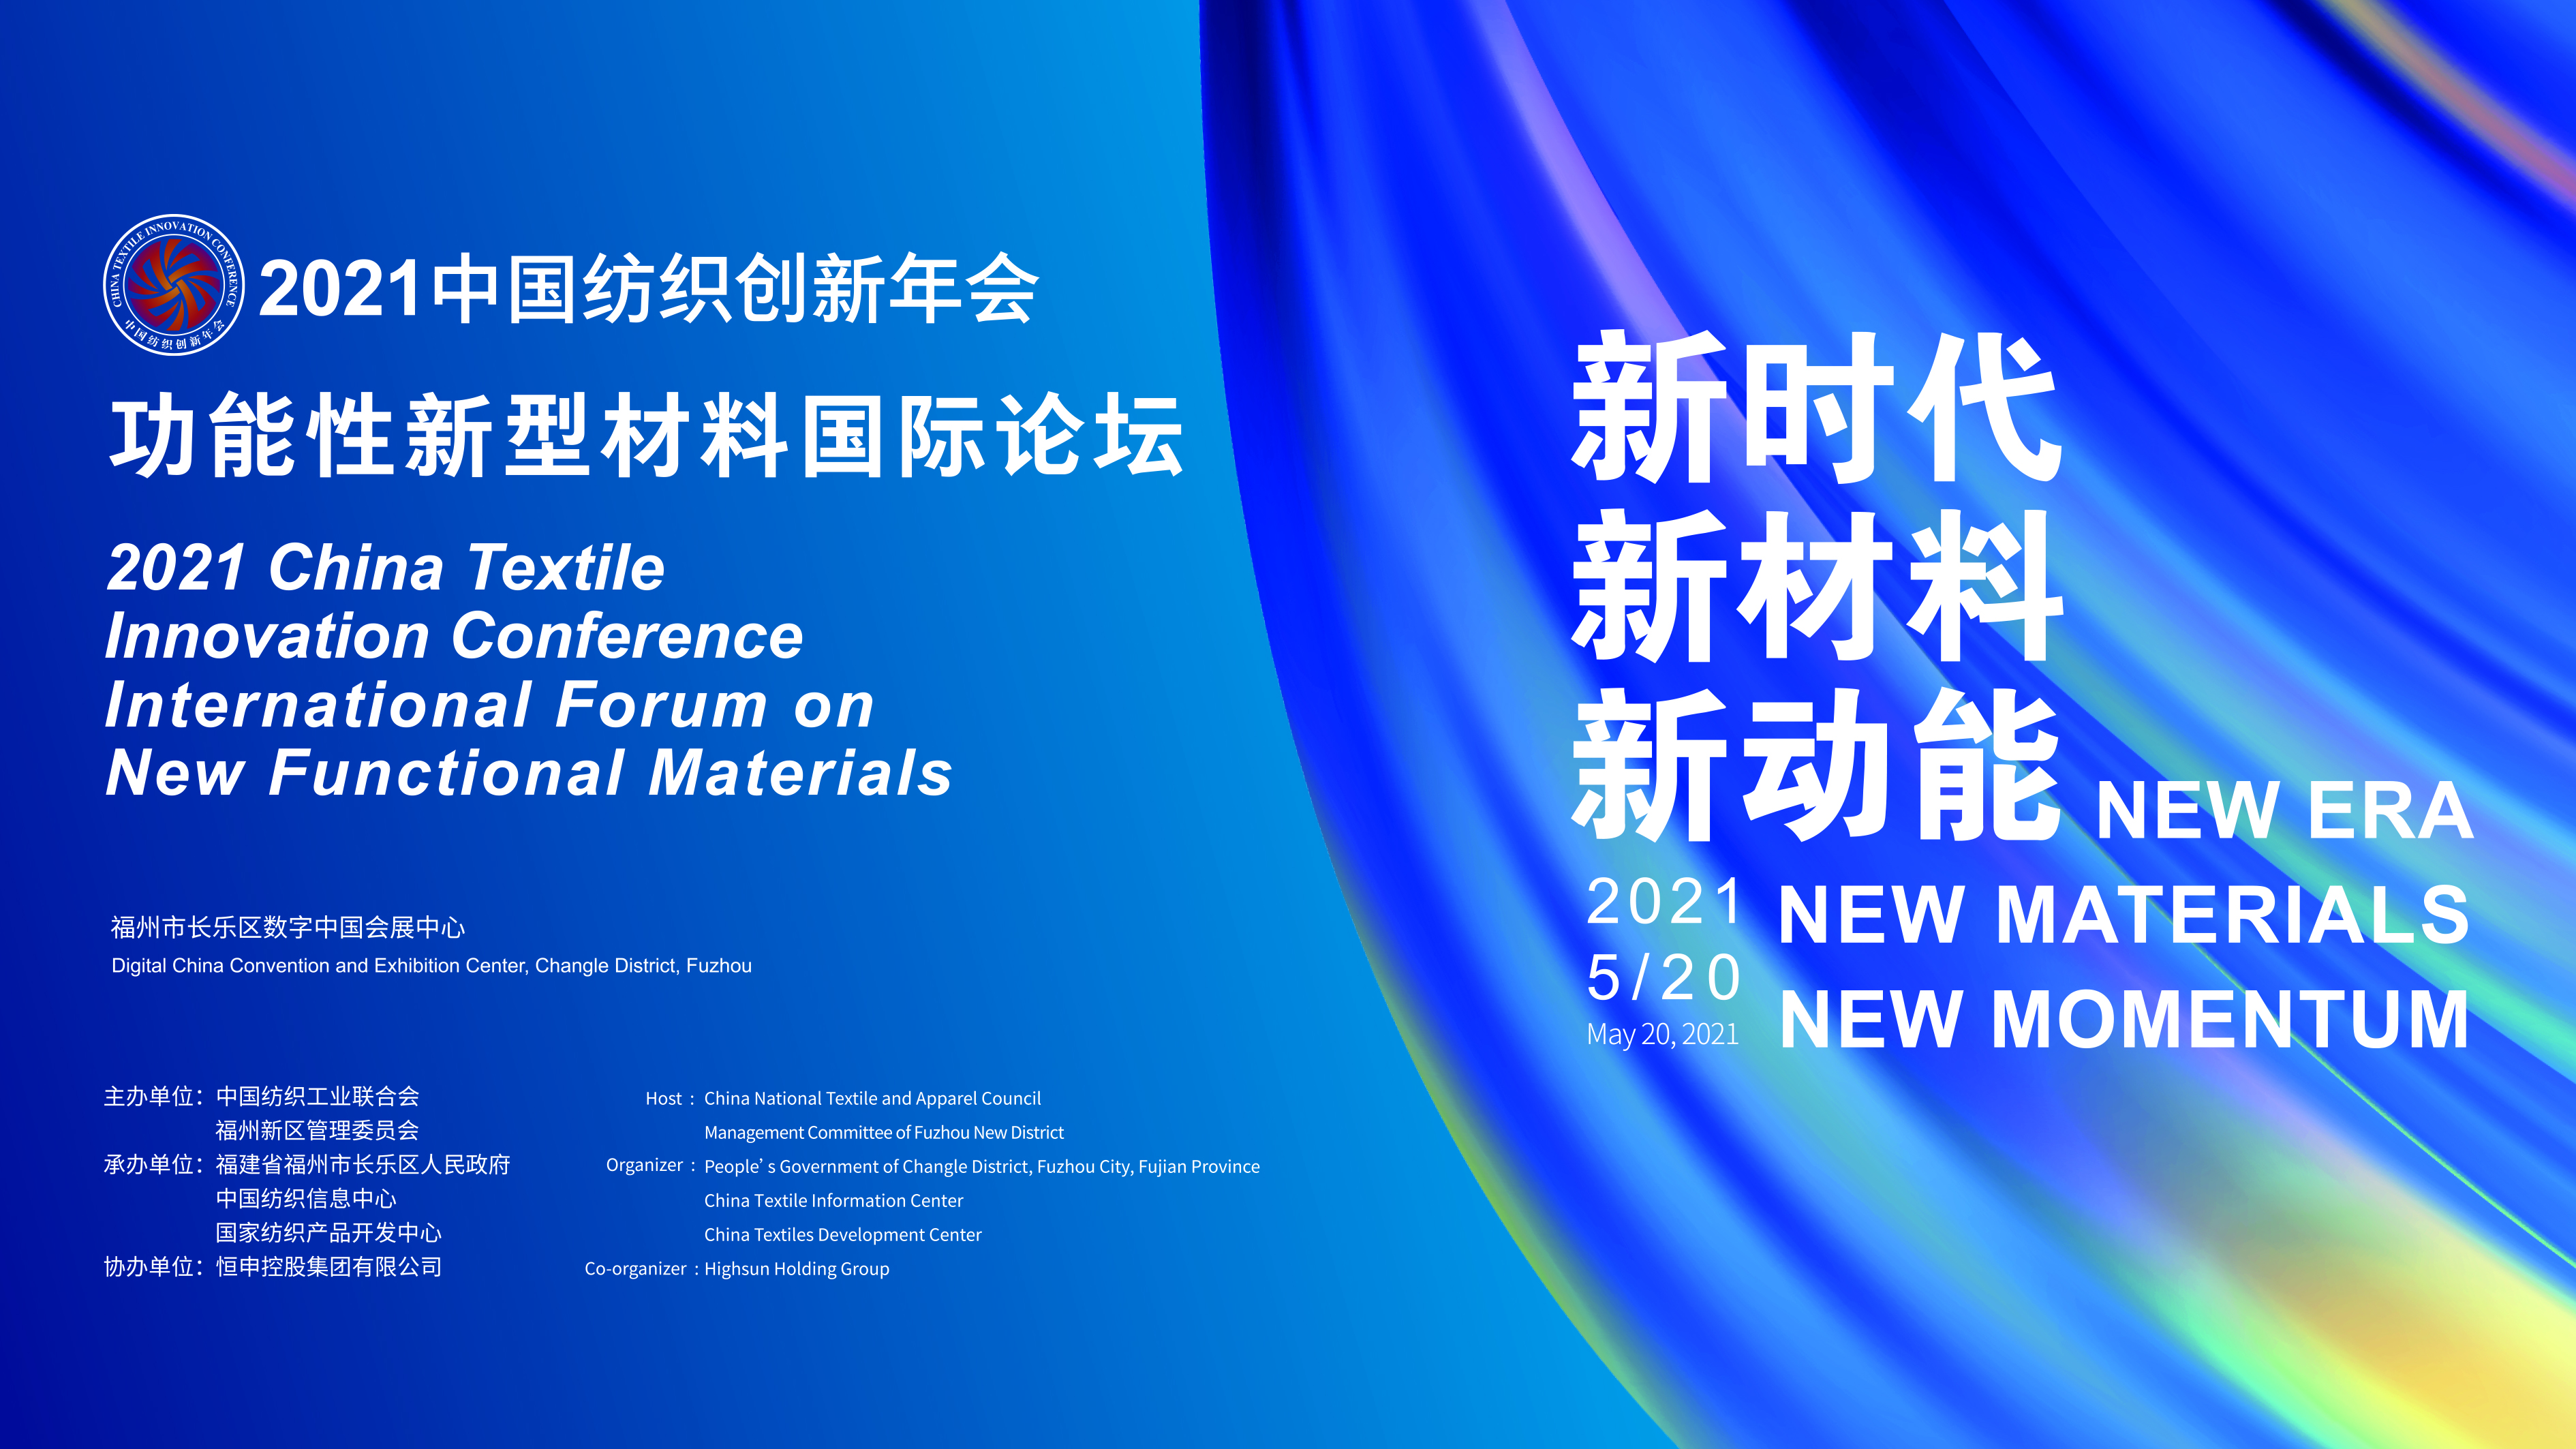 聚焦新材料！2021中国纺织创新年会·功能性新型材料国际论坛将于福州召开